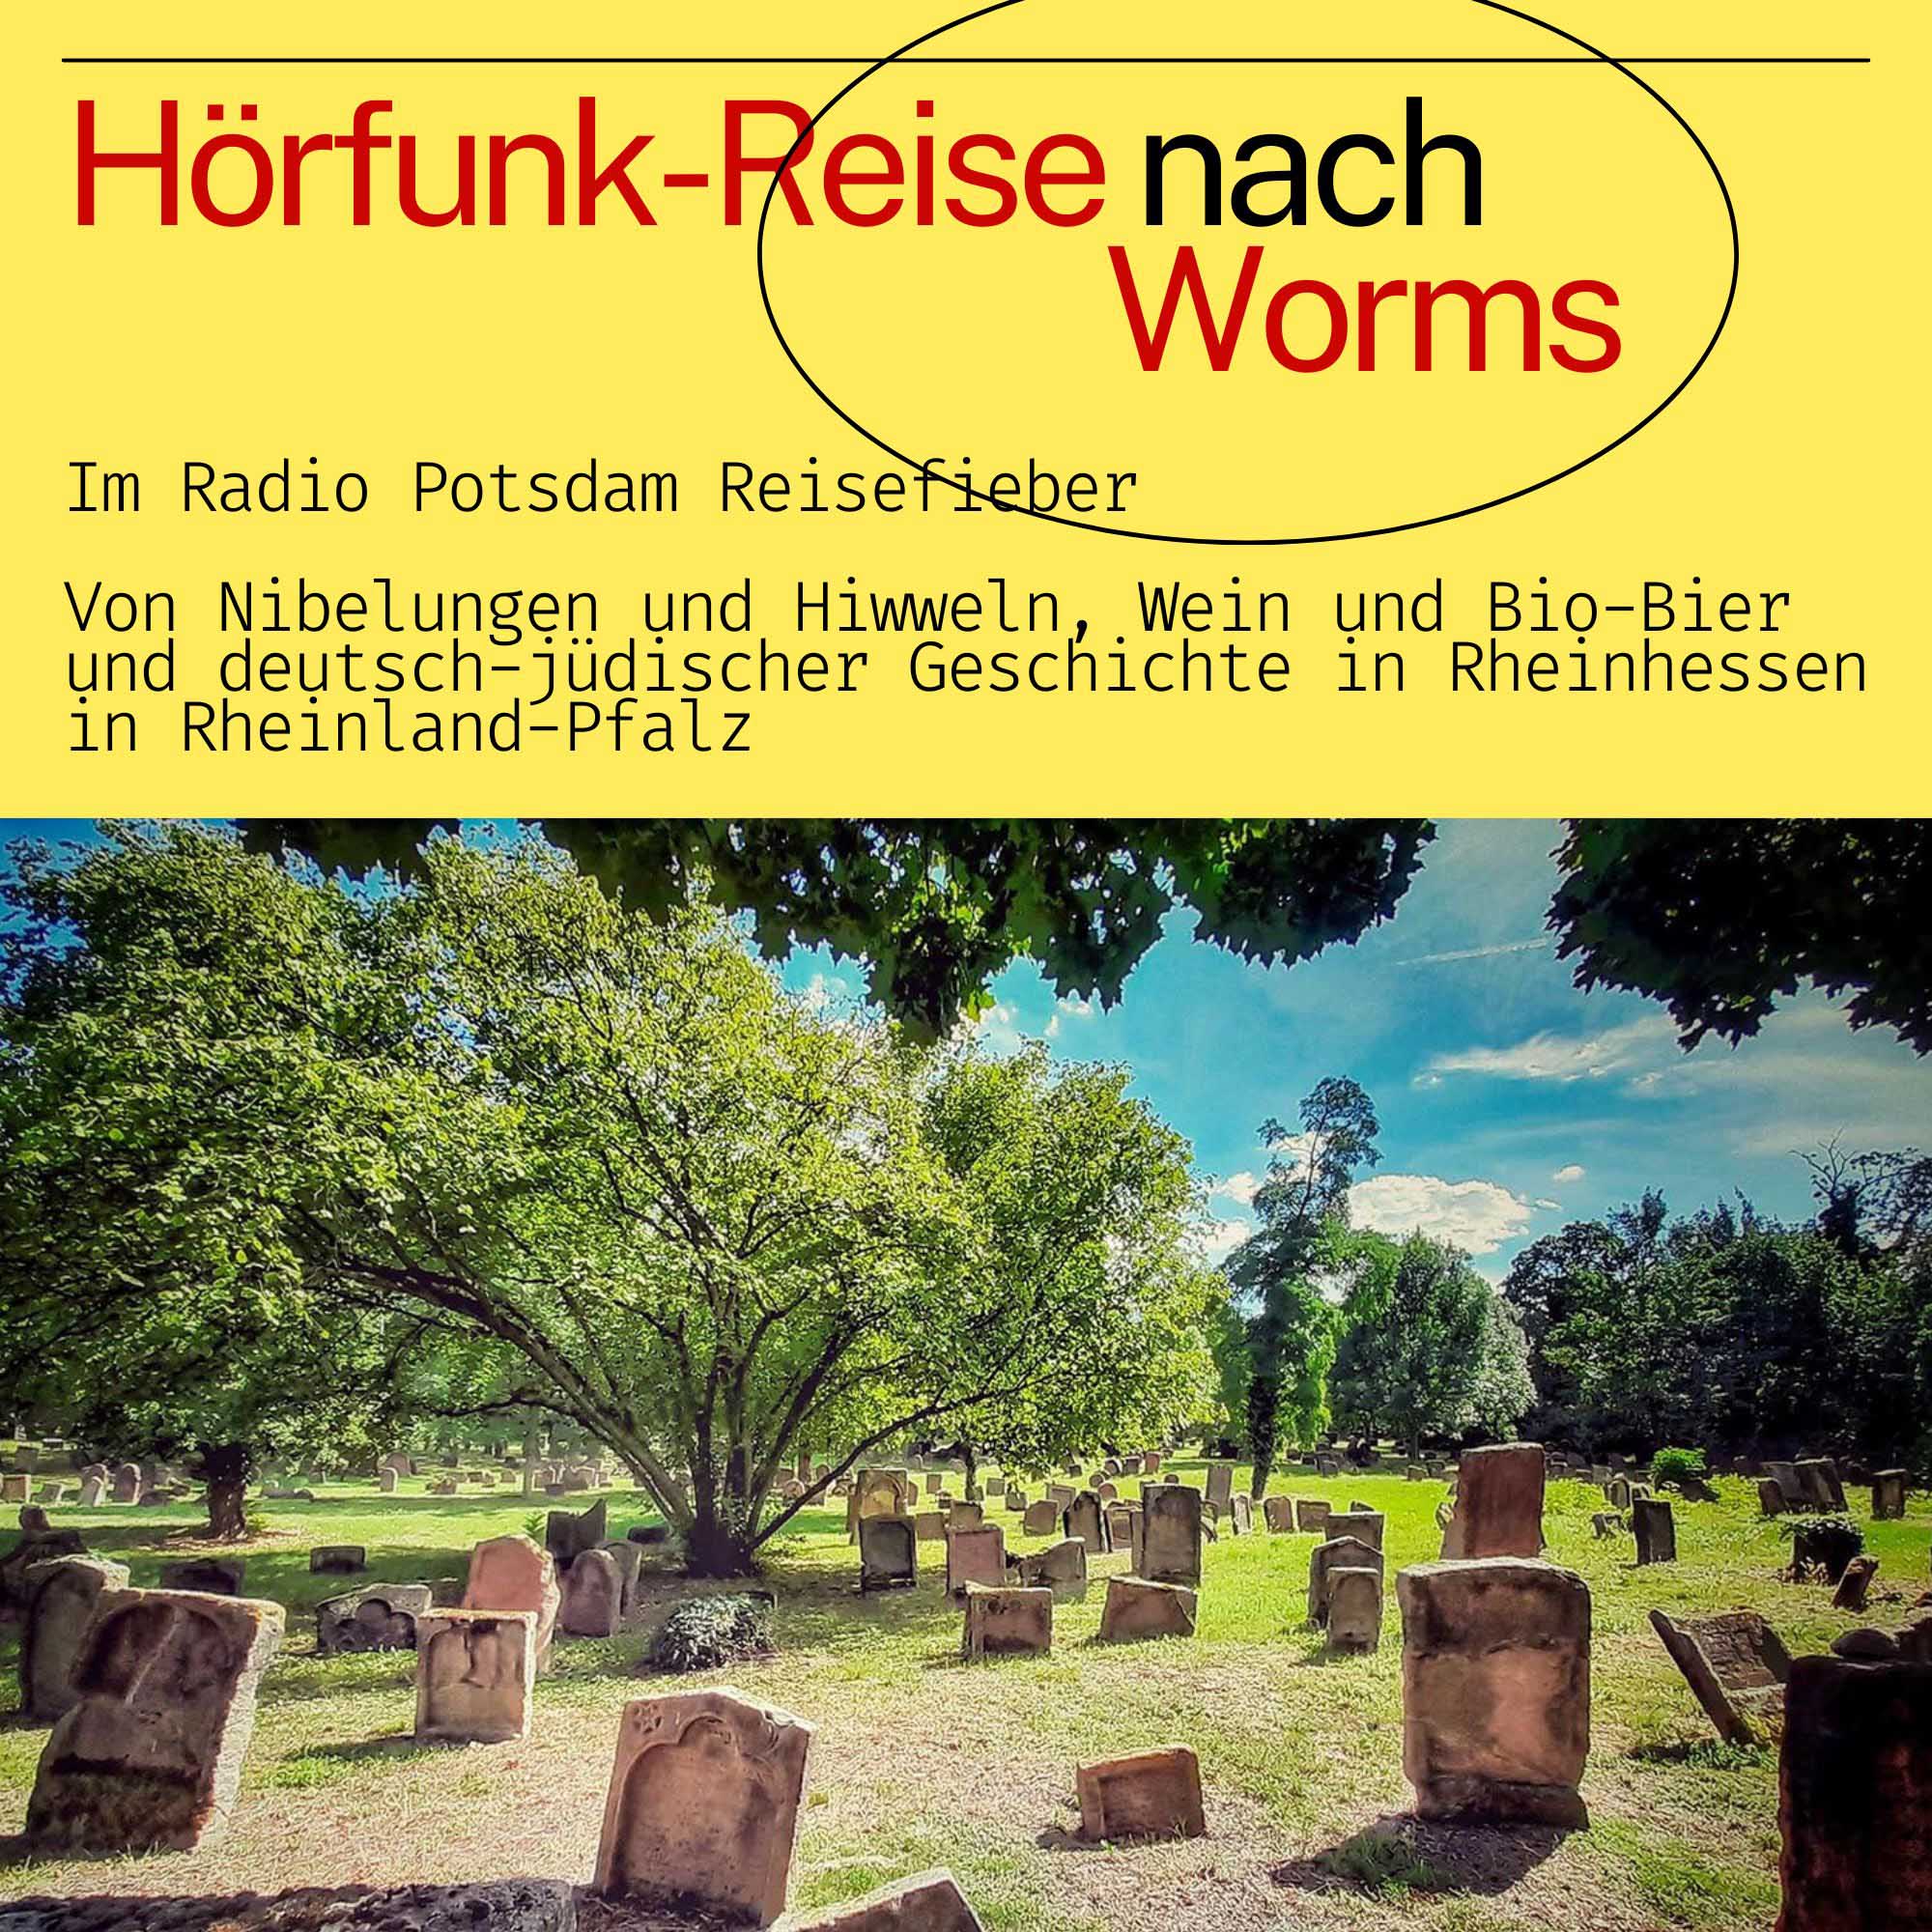 #82 Worms - eine Hörfunk Reise mit dem Radio Potsdam Reisefieber - als Podcast